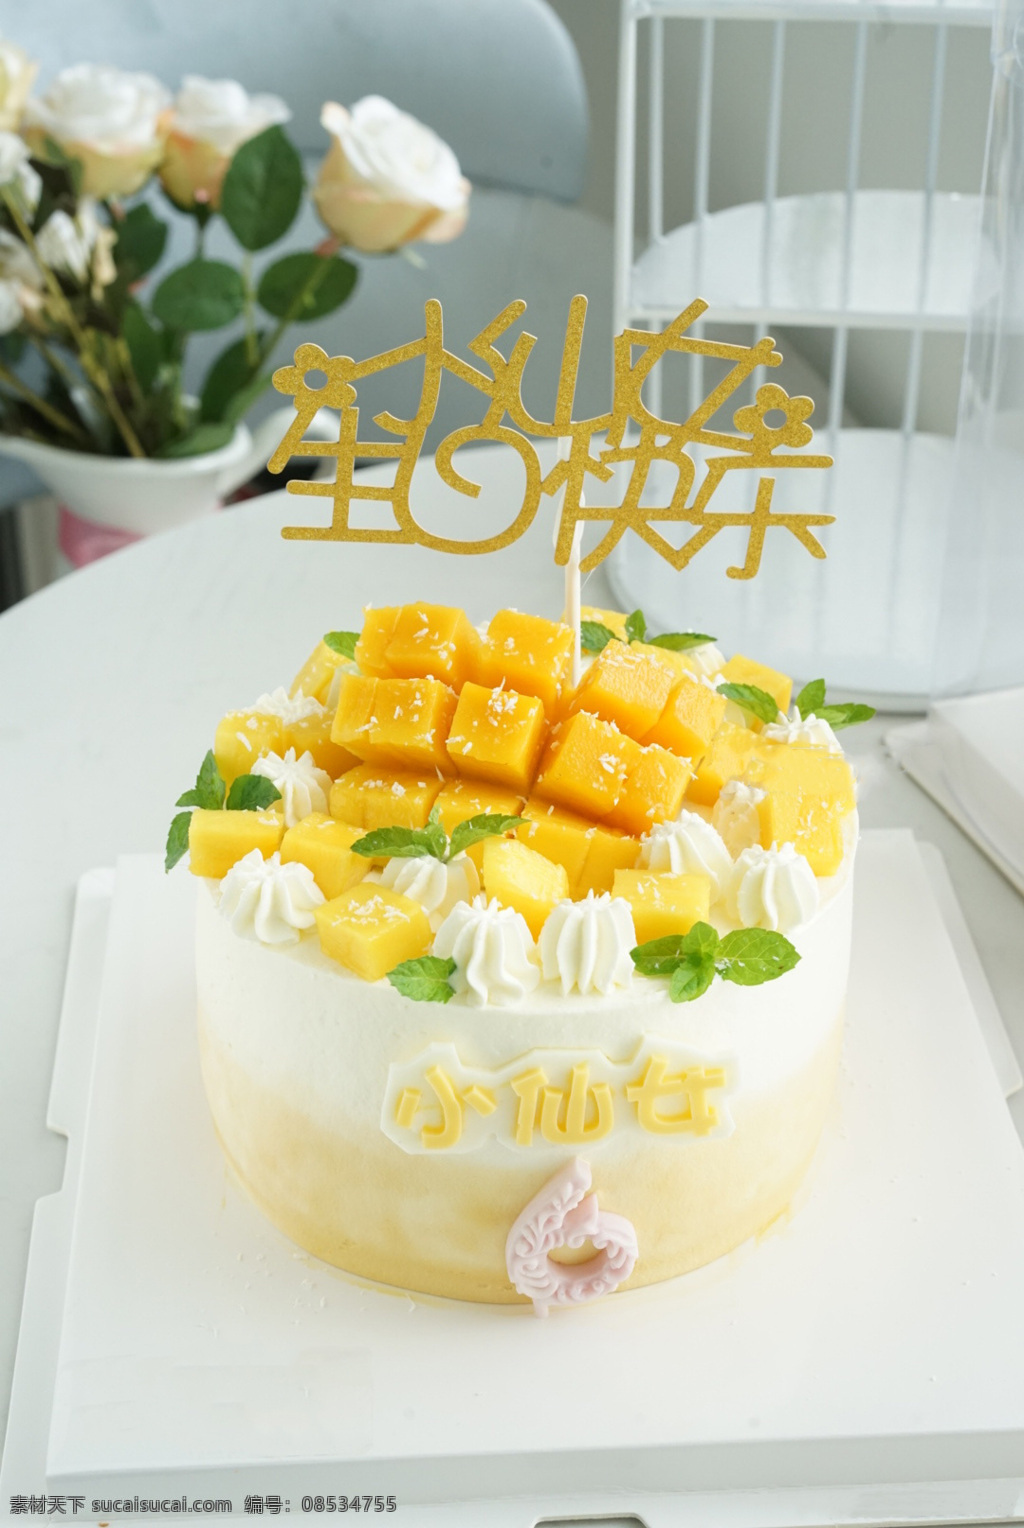 芒果蛋糕 生日蛋糕 小仙女蛋糕 6岁蛋糕 奶油蛋糕 餐饮美食 西餐美食